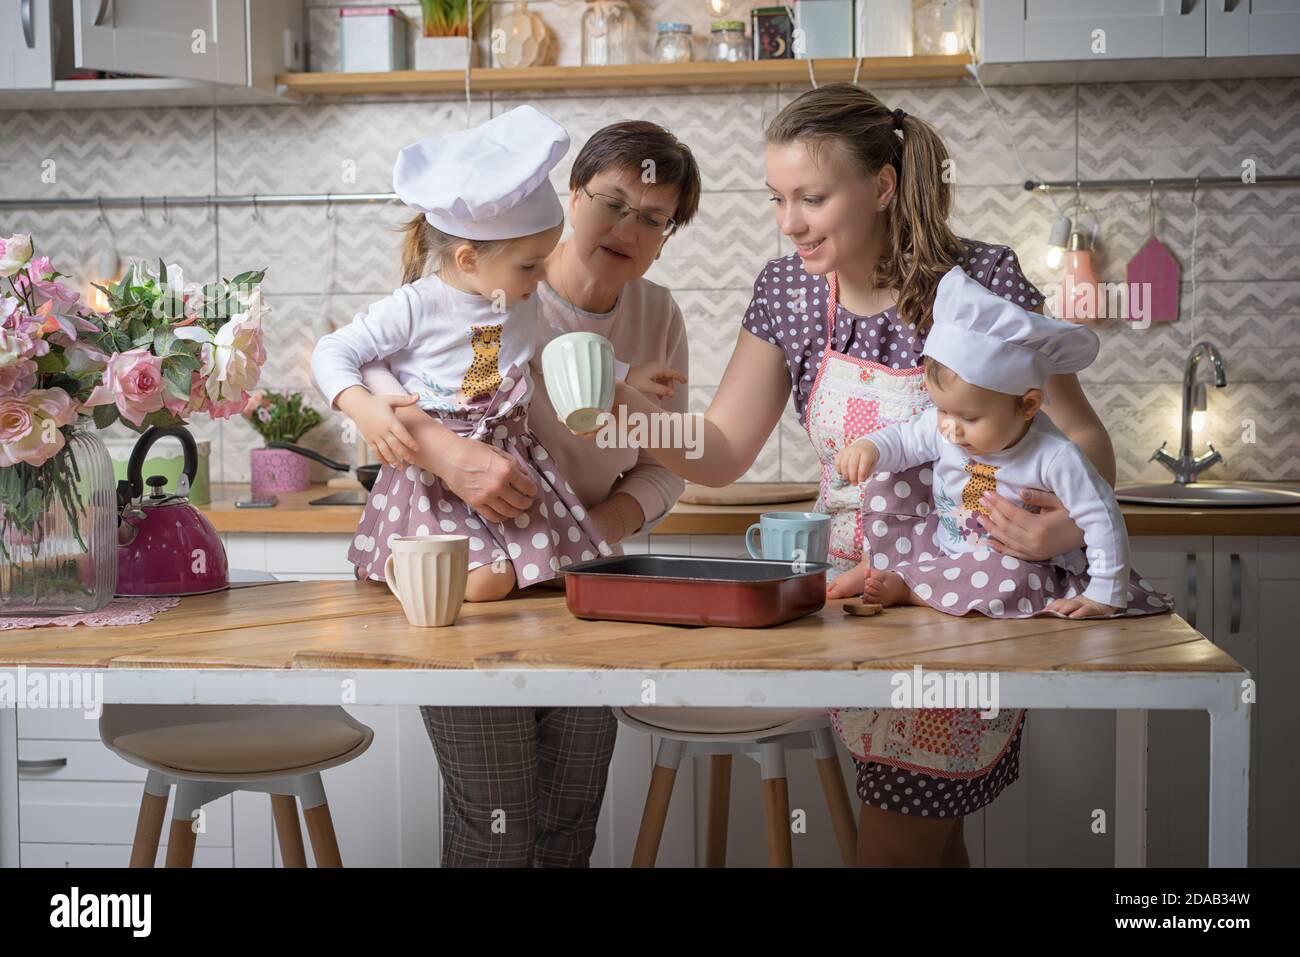 La mamá de la familia, la abuela y dos hermanas cocinan en la cocina. Foto de stock